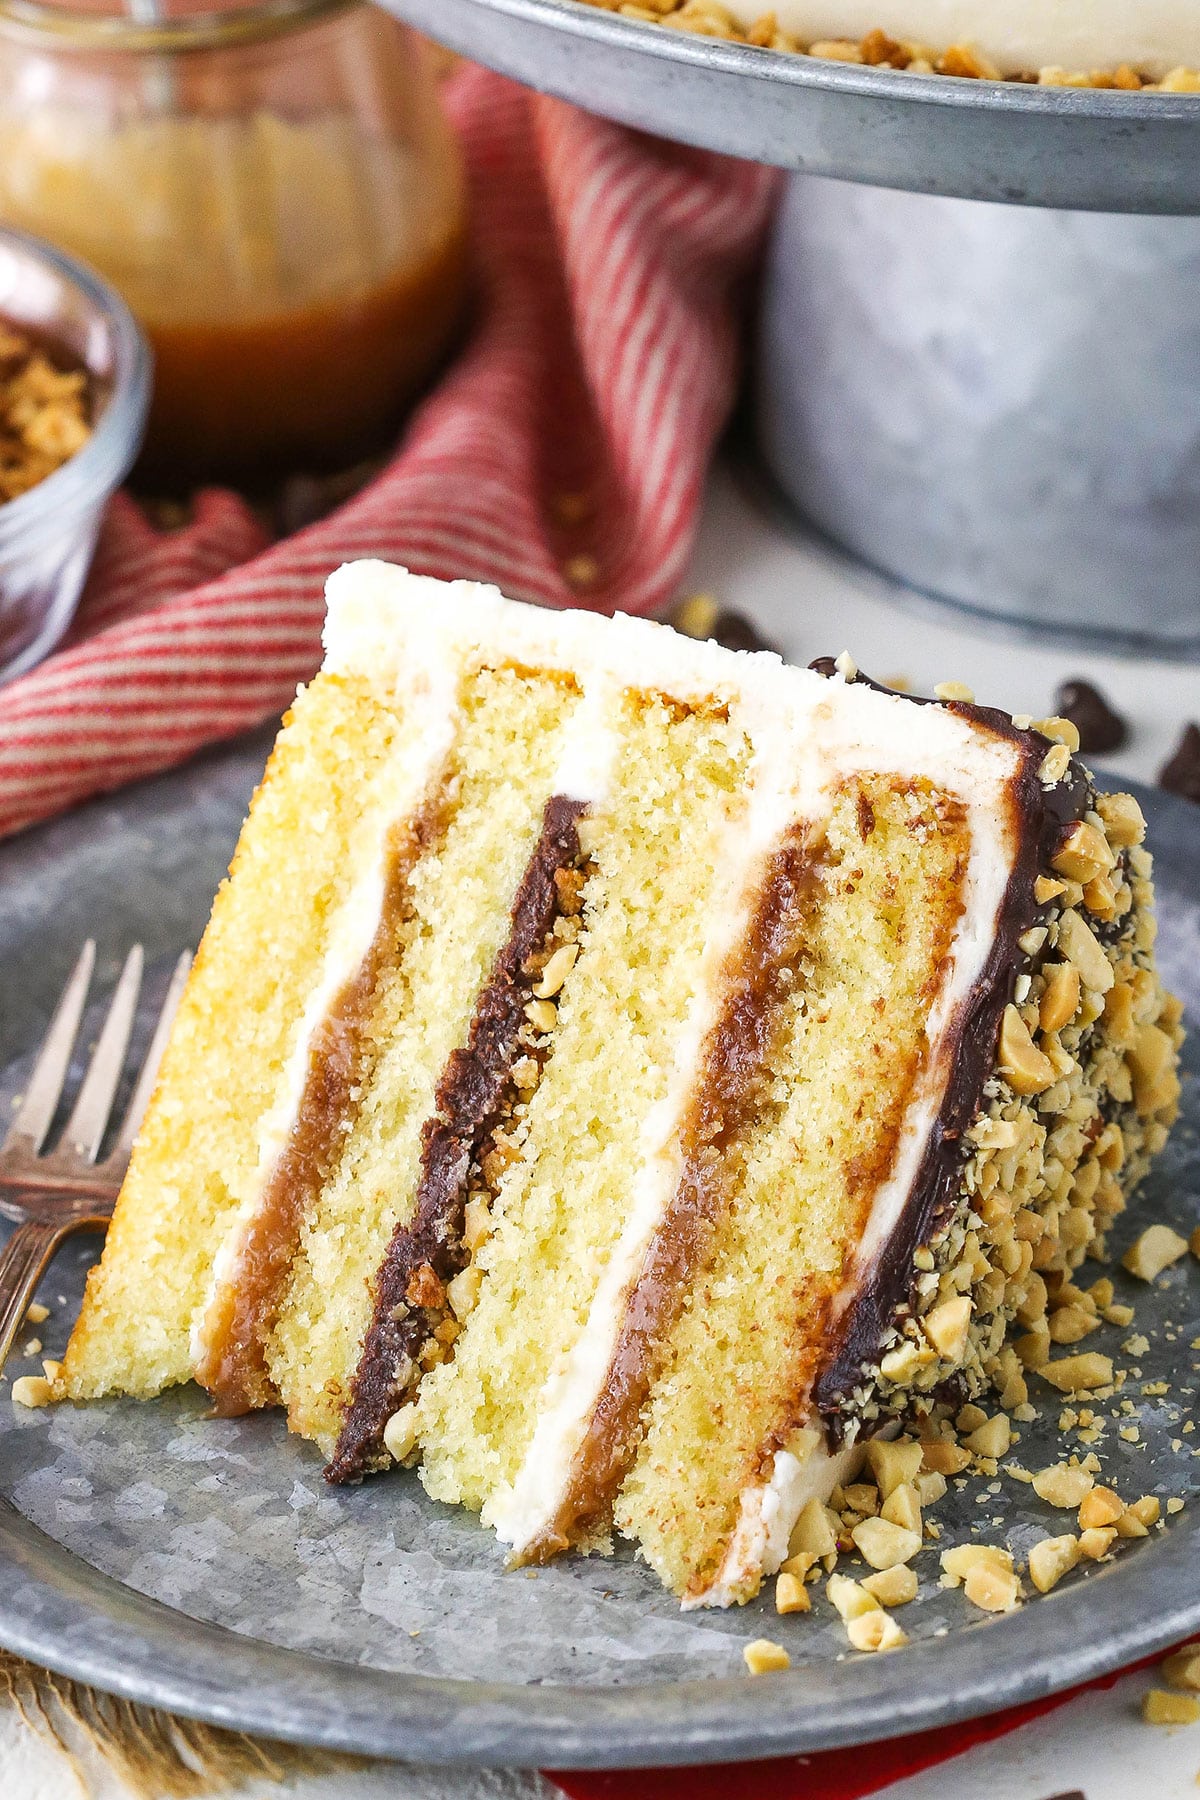 Layer cake au chocolat et ganache vanille - Sweetly Cakes